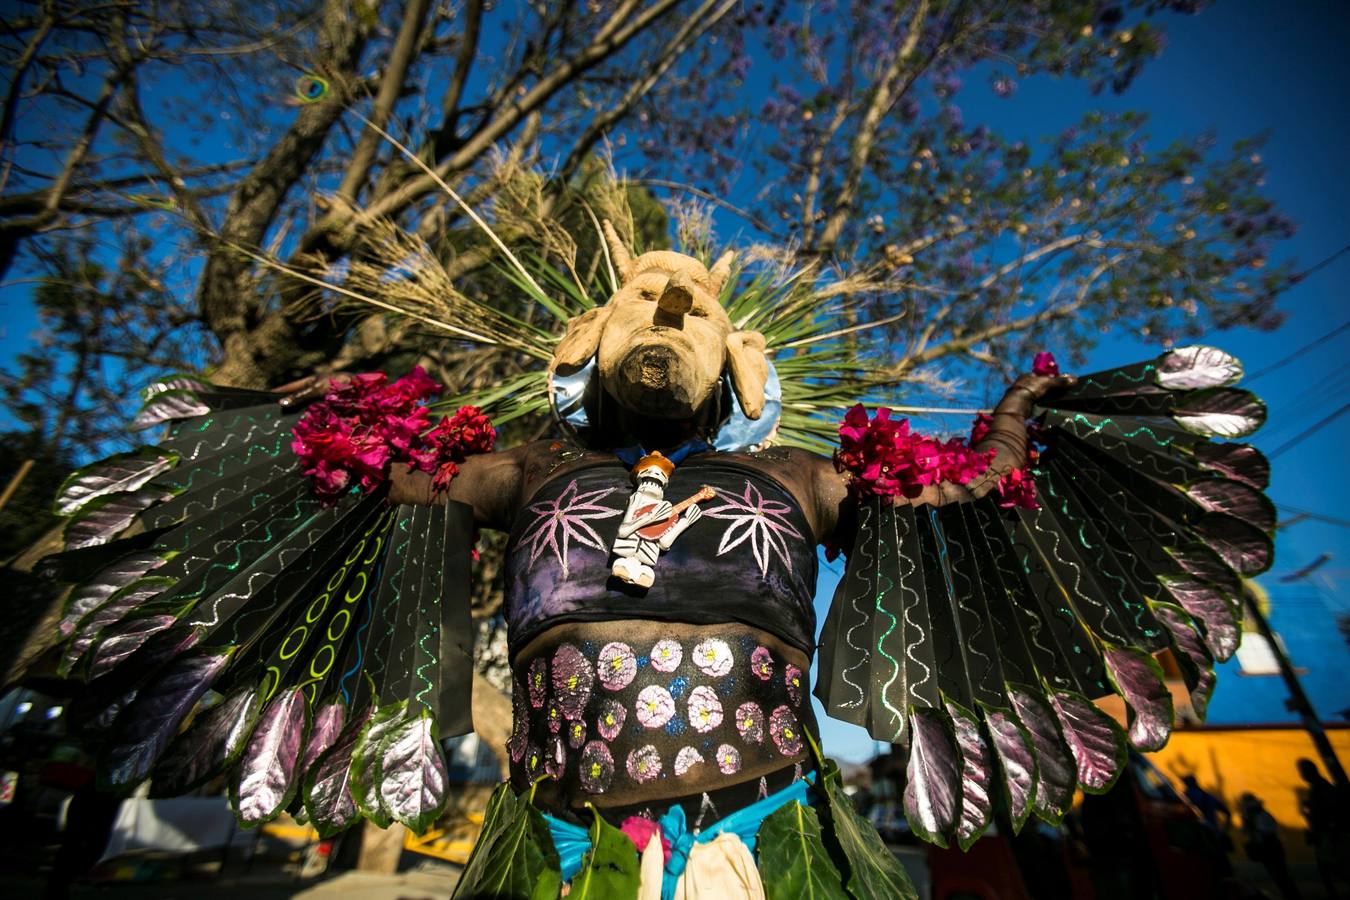 Cubiertos de aceite quemado y con máscaras de alebrijes, habitantes de la población de San Martín Tilcajete, en el estado de Oaxaca (México) celebran su tradicional carnaval, que anuncia la víspera de los festejos religiosos de la Cuaresma.